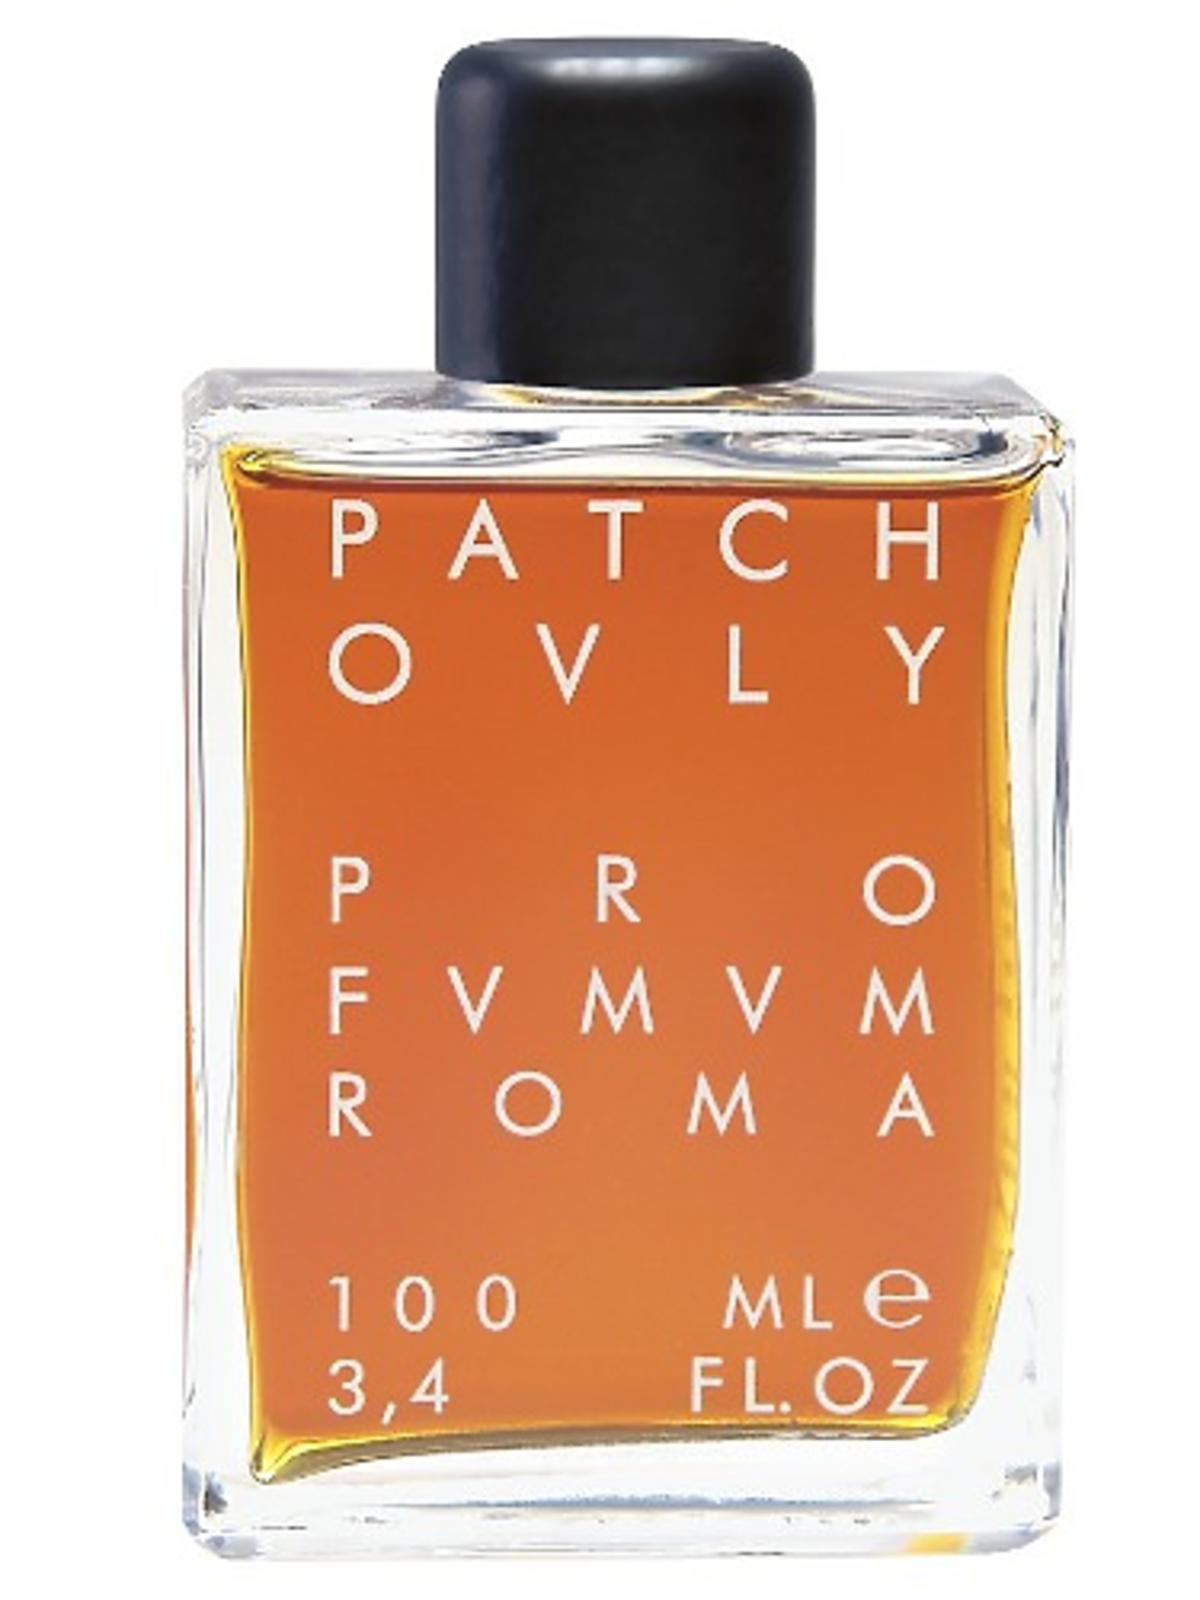 Patchouly Profumum Roma, 795zł / 100ml, perfumeriaquality.pl